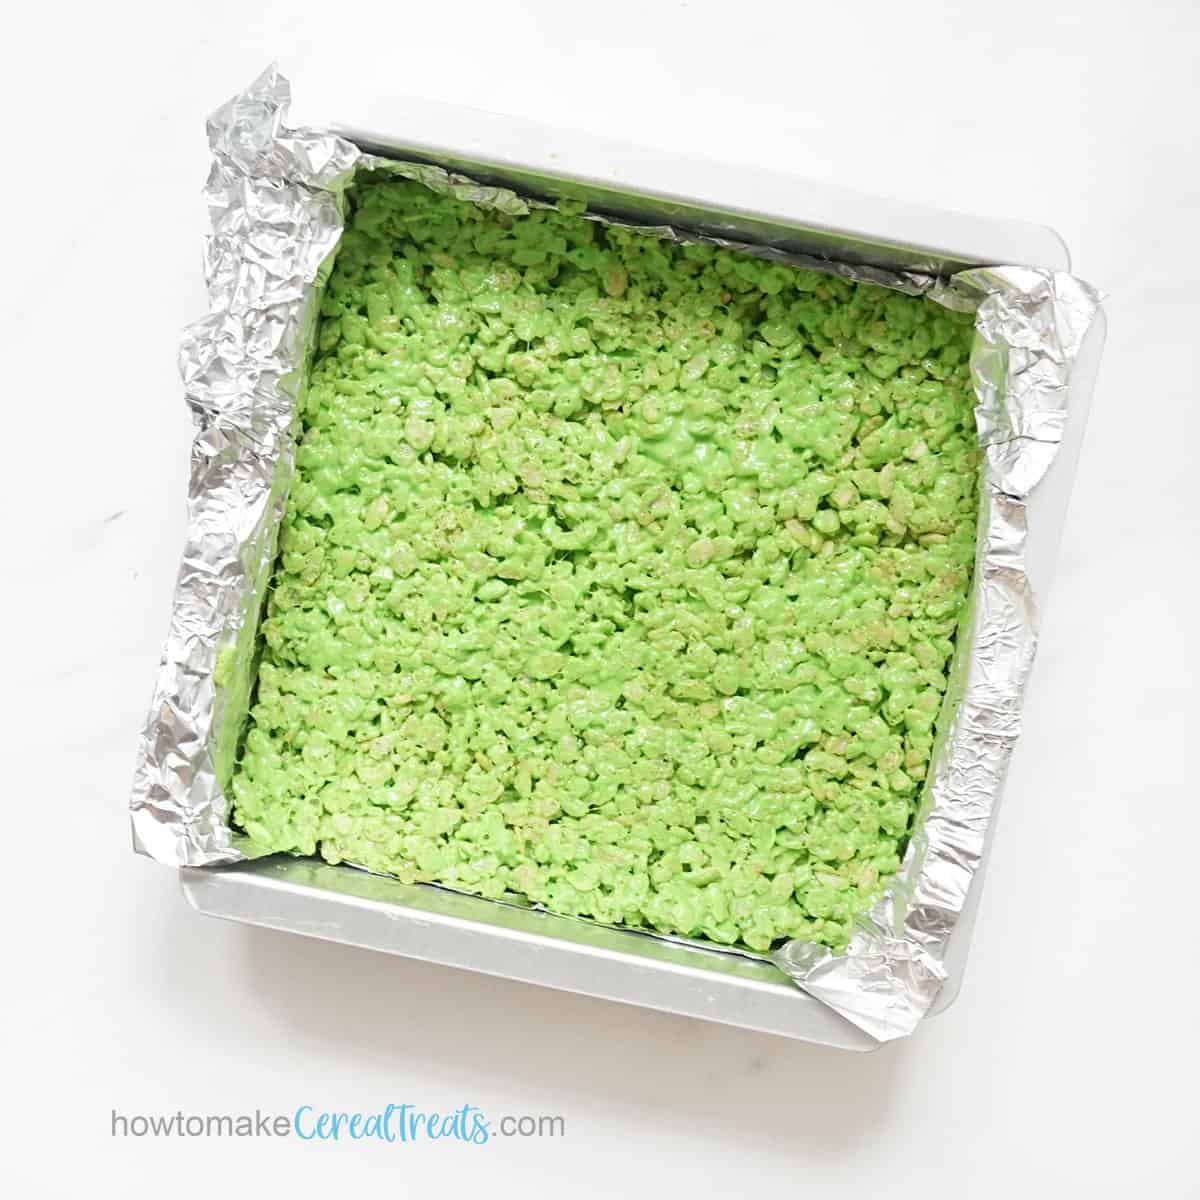 green rice krispie treats in baking pan